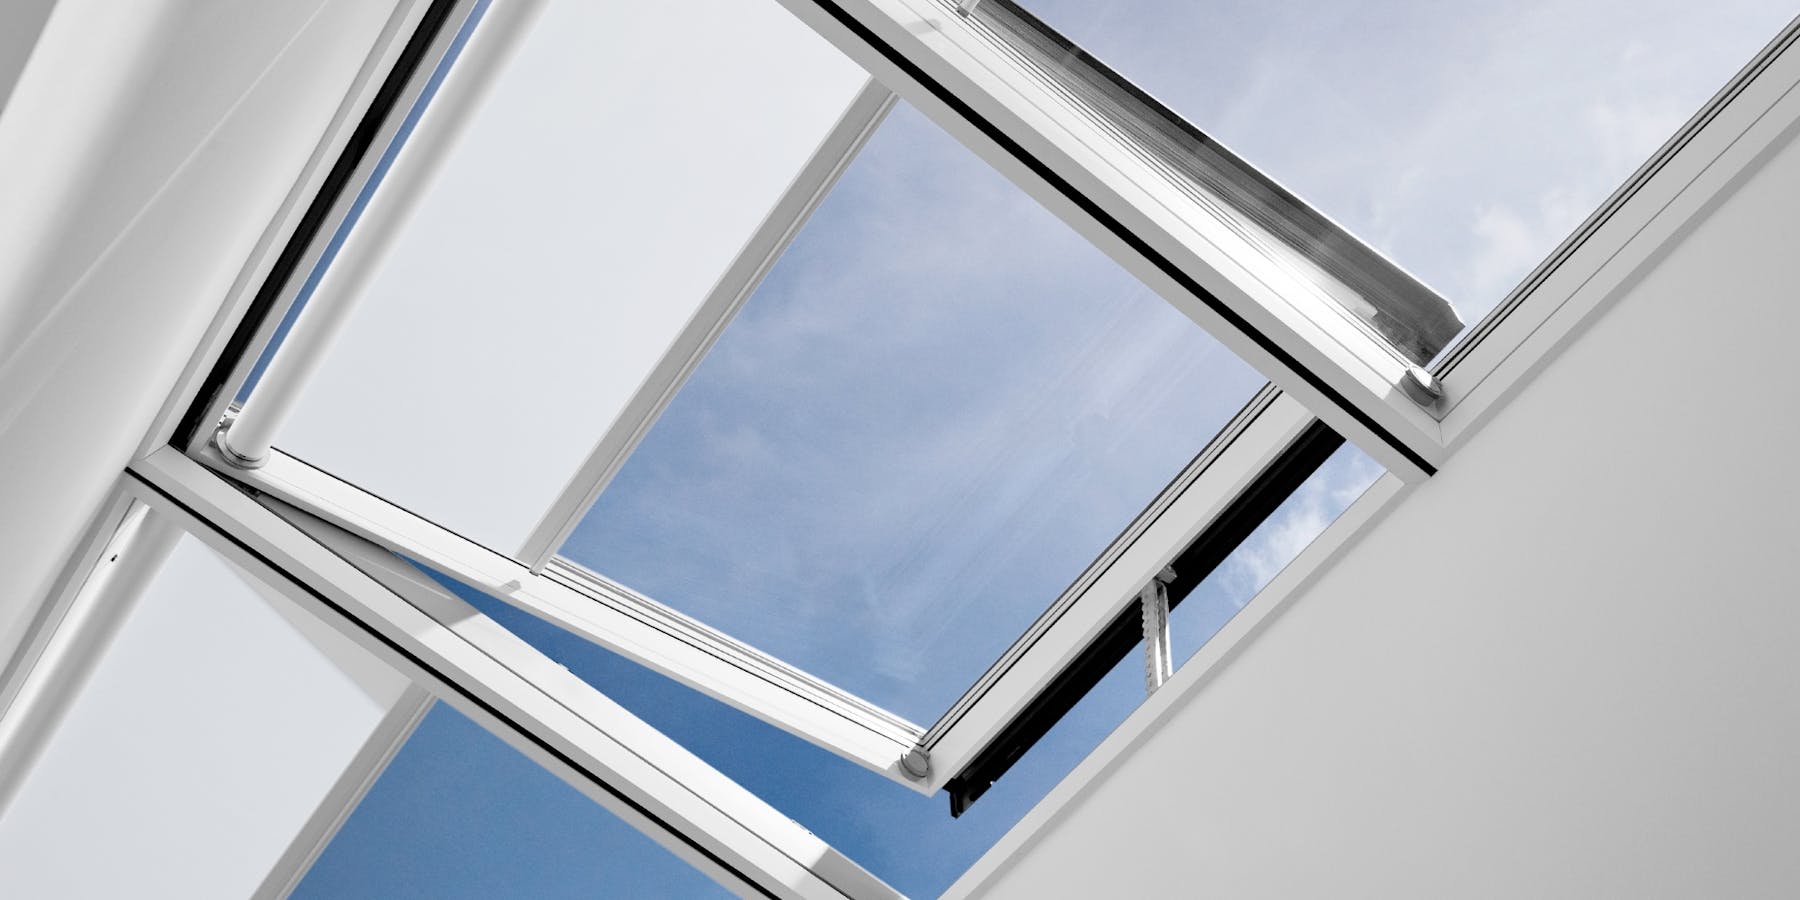 Dachfenster reparieren Lichtwunder Velux | Rollo